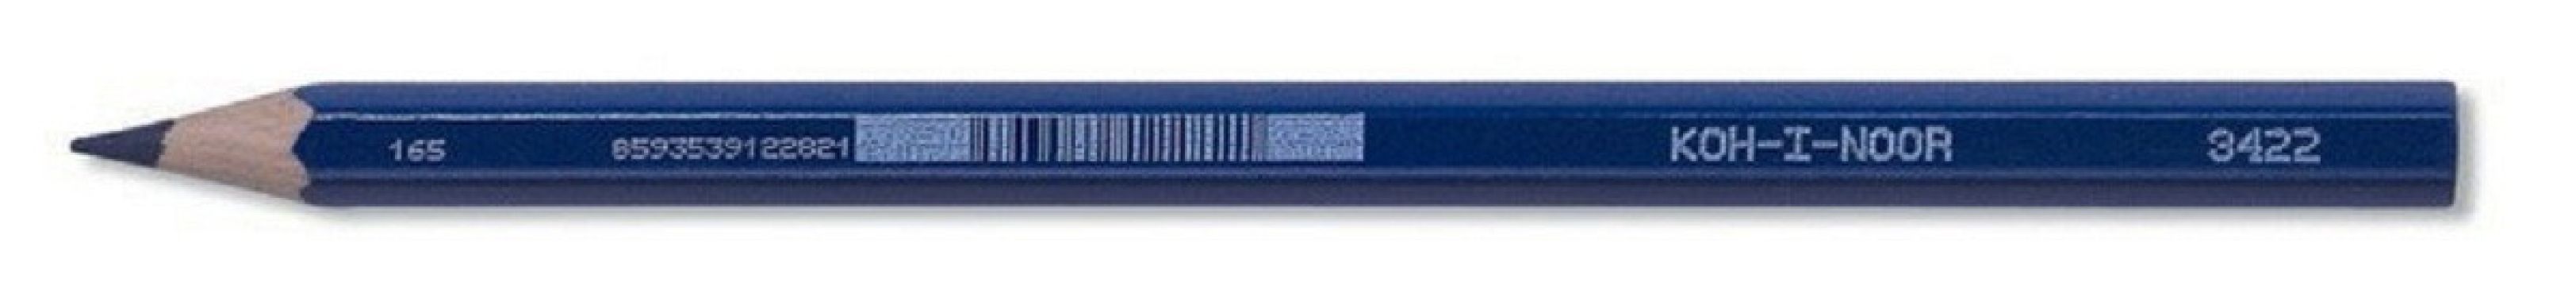 Ceruzka Koh-i-noor 3422 modrá